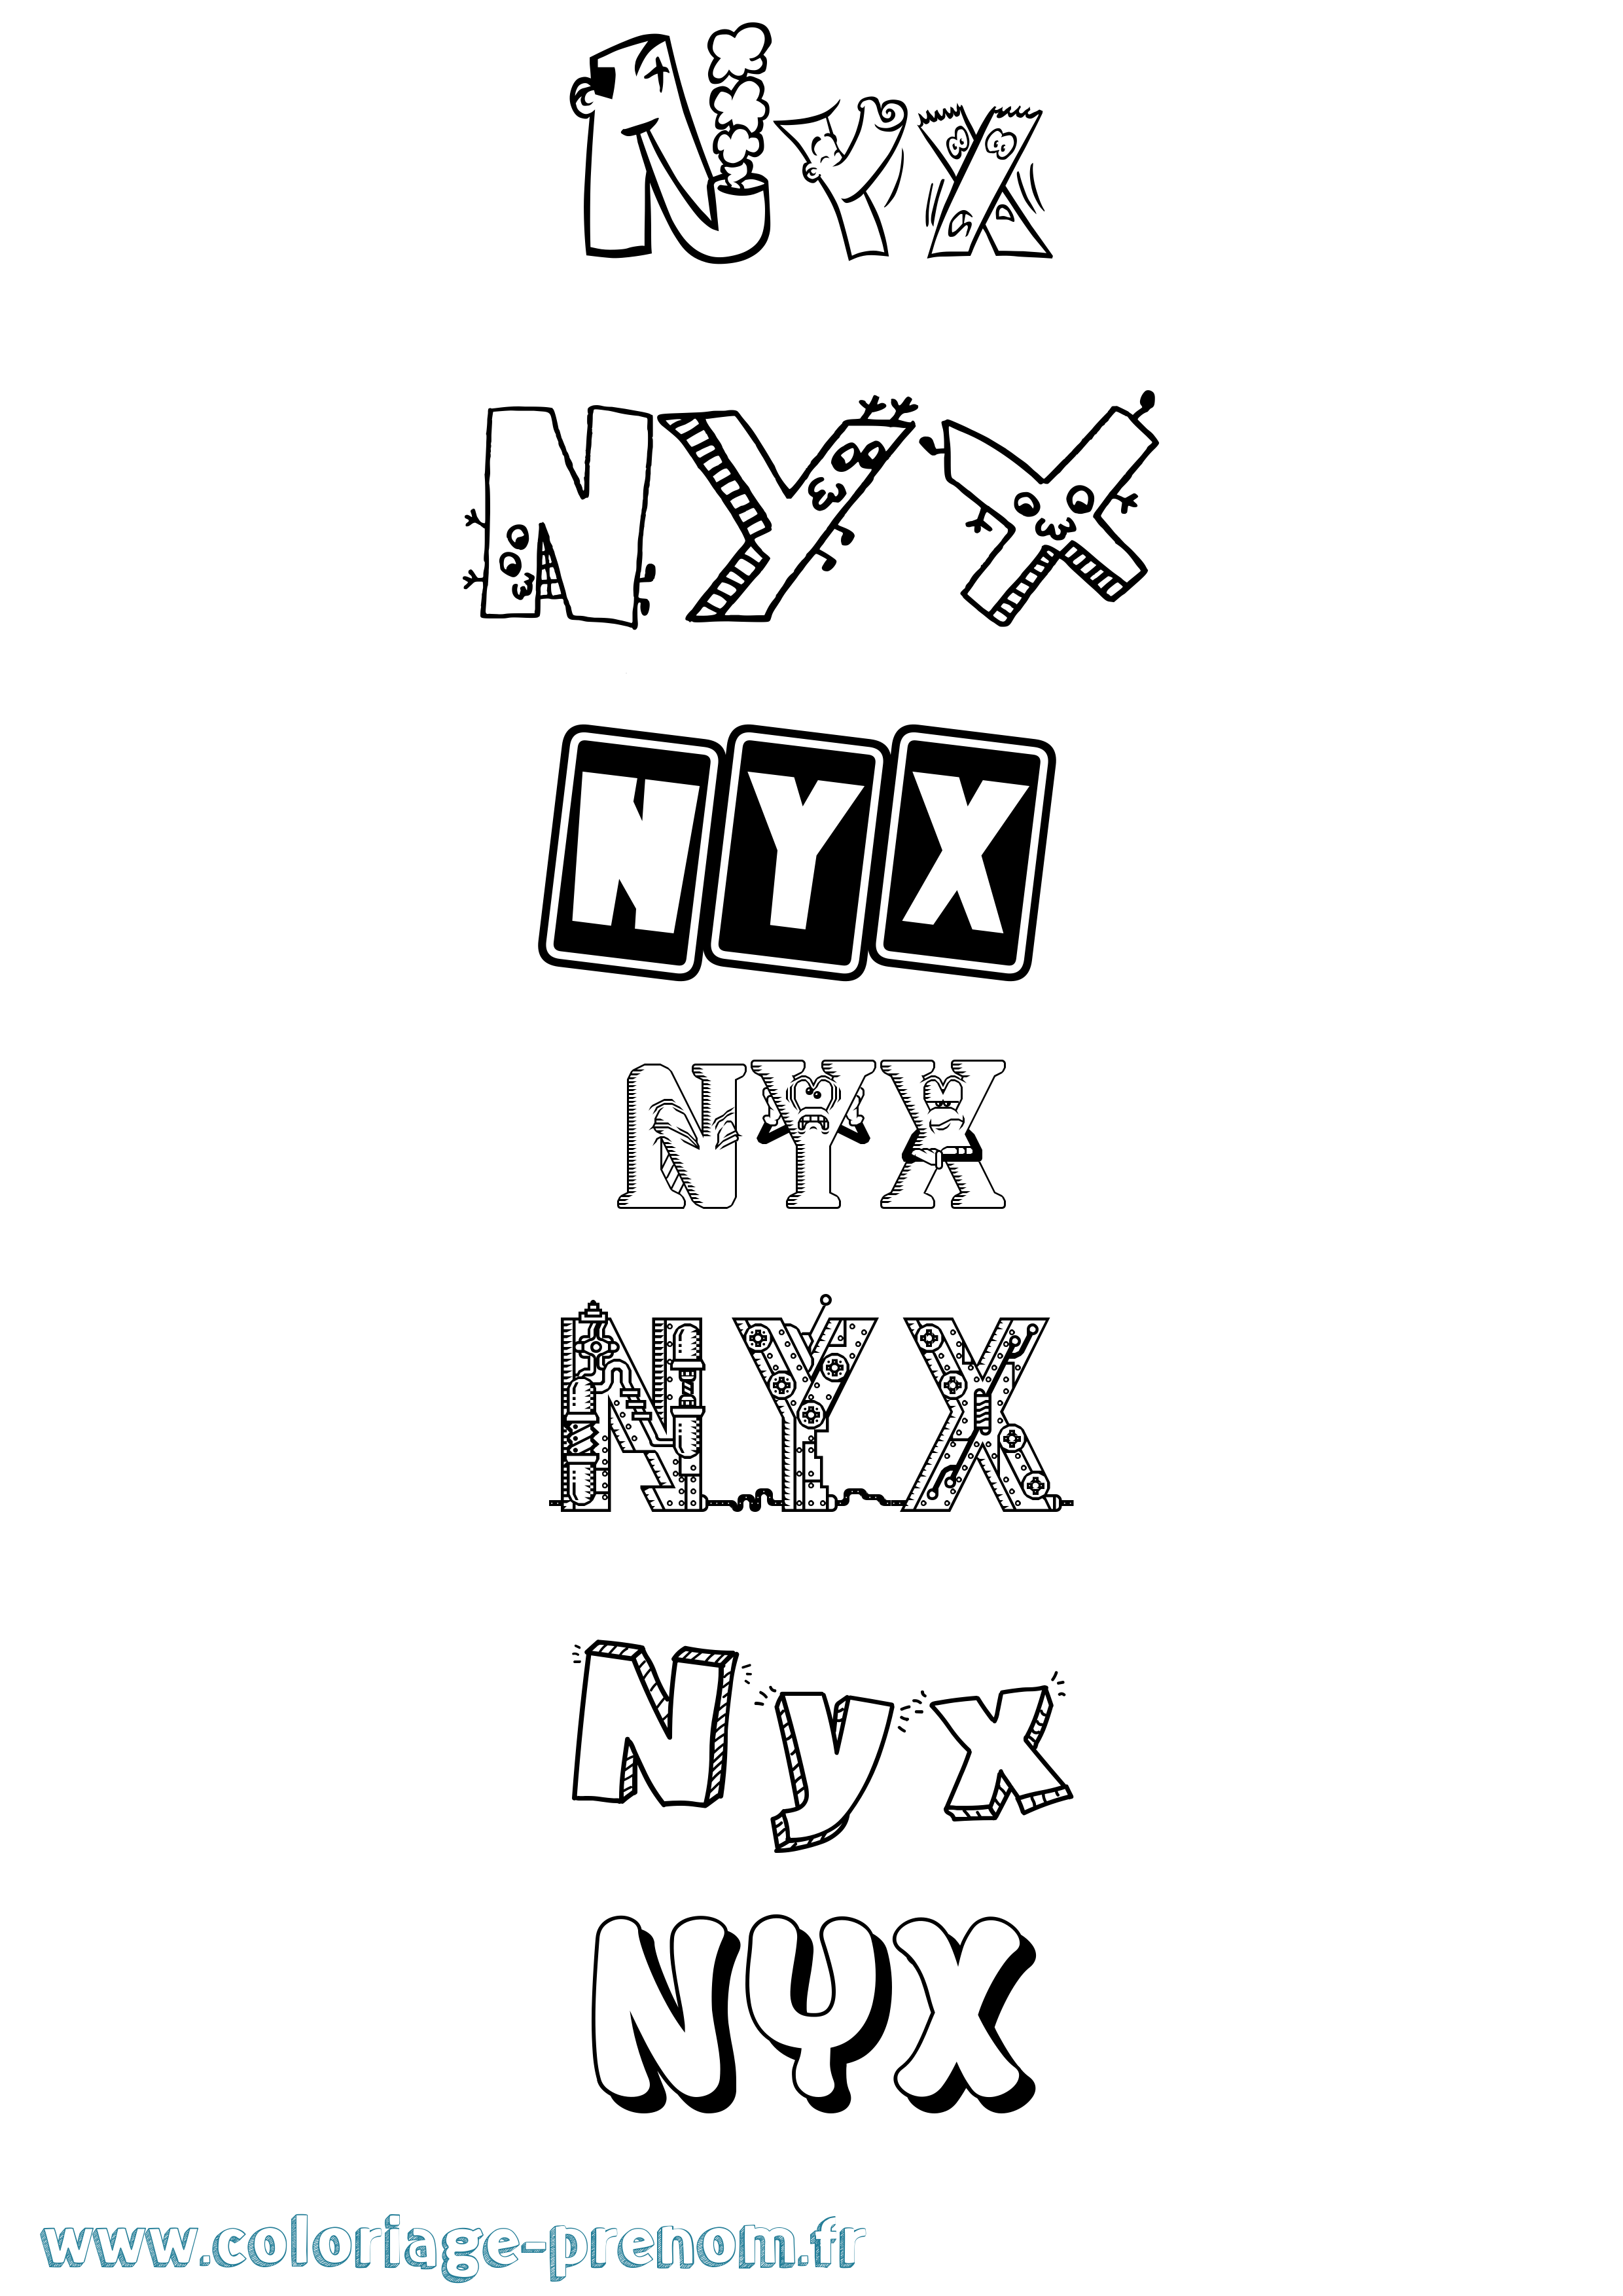 Coloriage prénom Nyx Fun